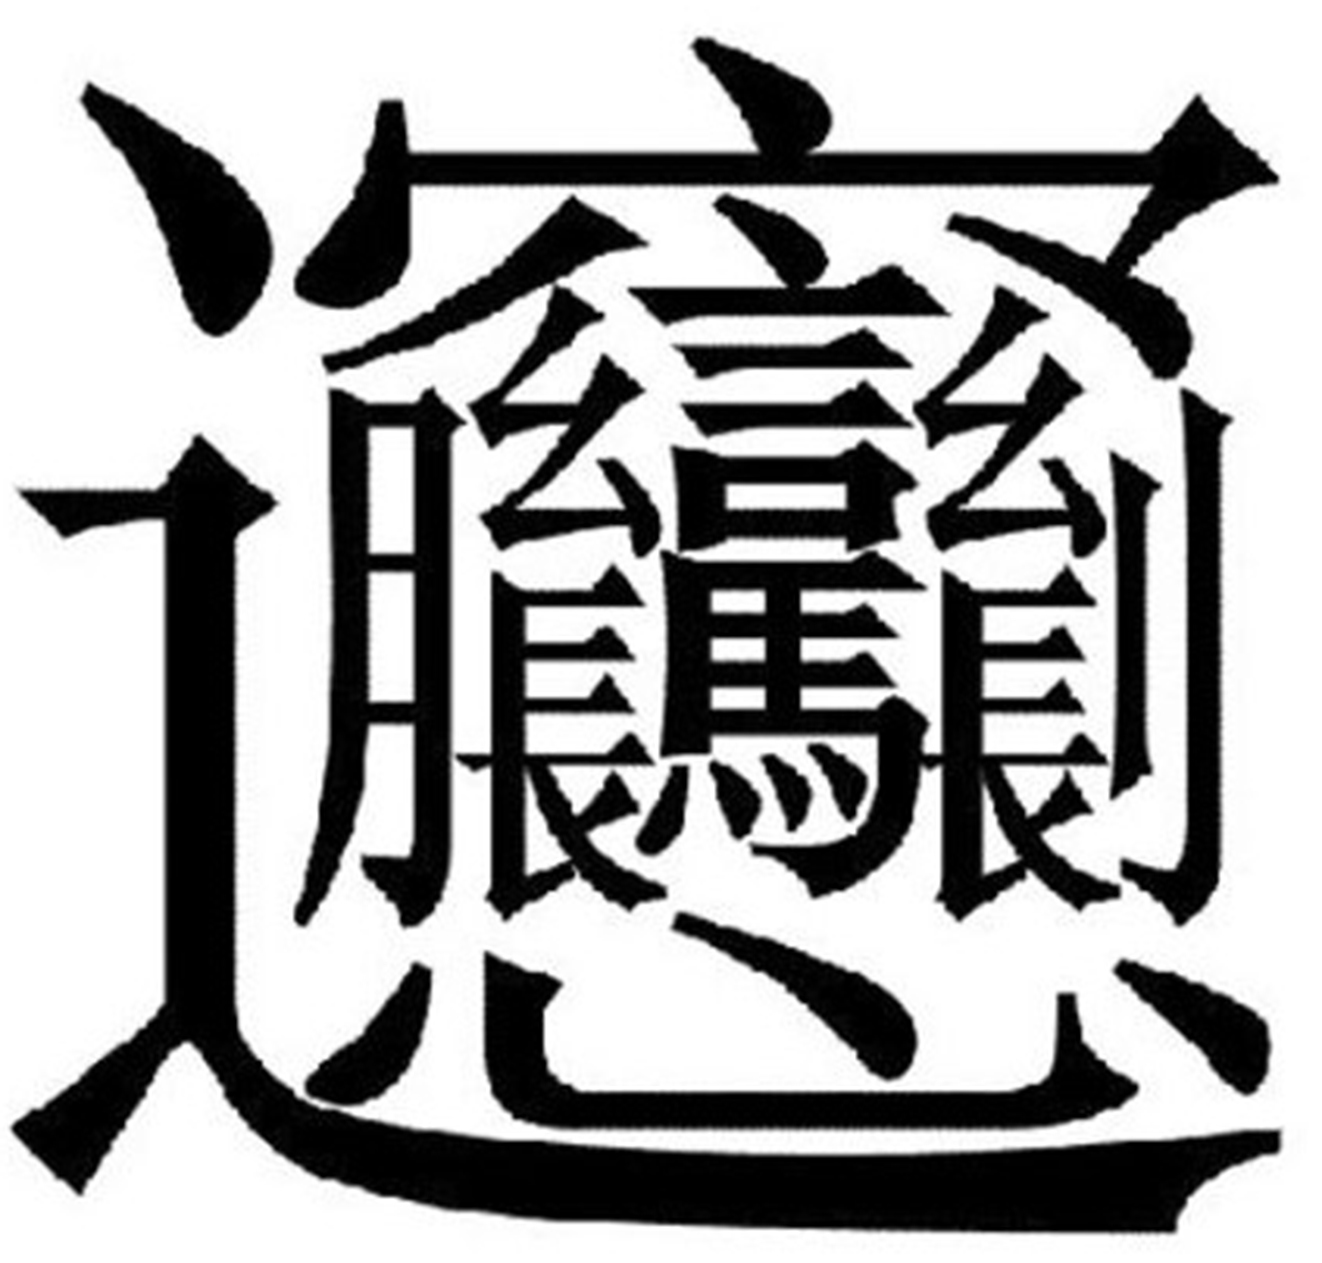 Bắt đầu học tiếng Trung với chữ phồn thể hay giản thể thì thích hợp?